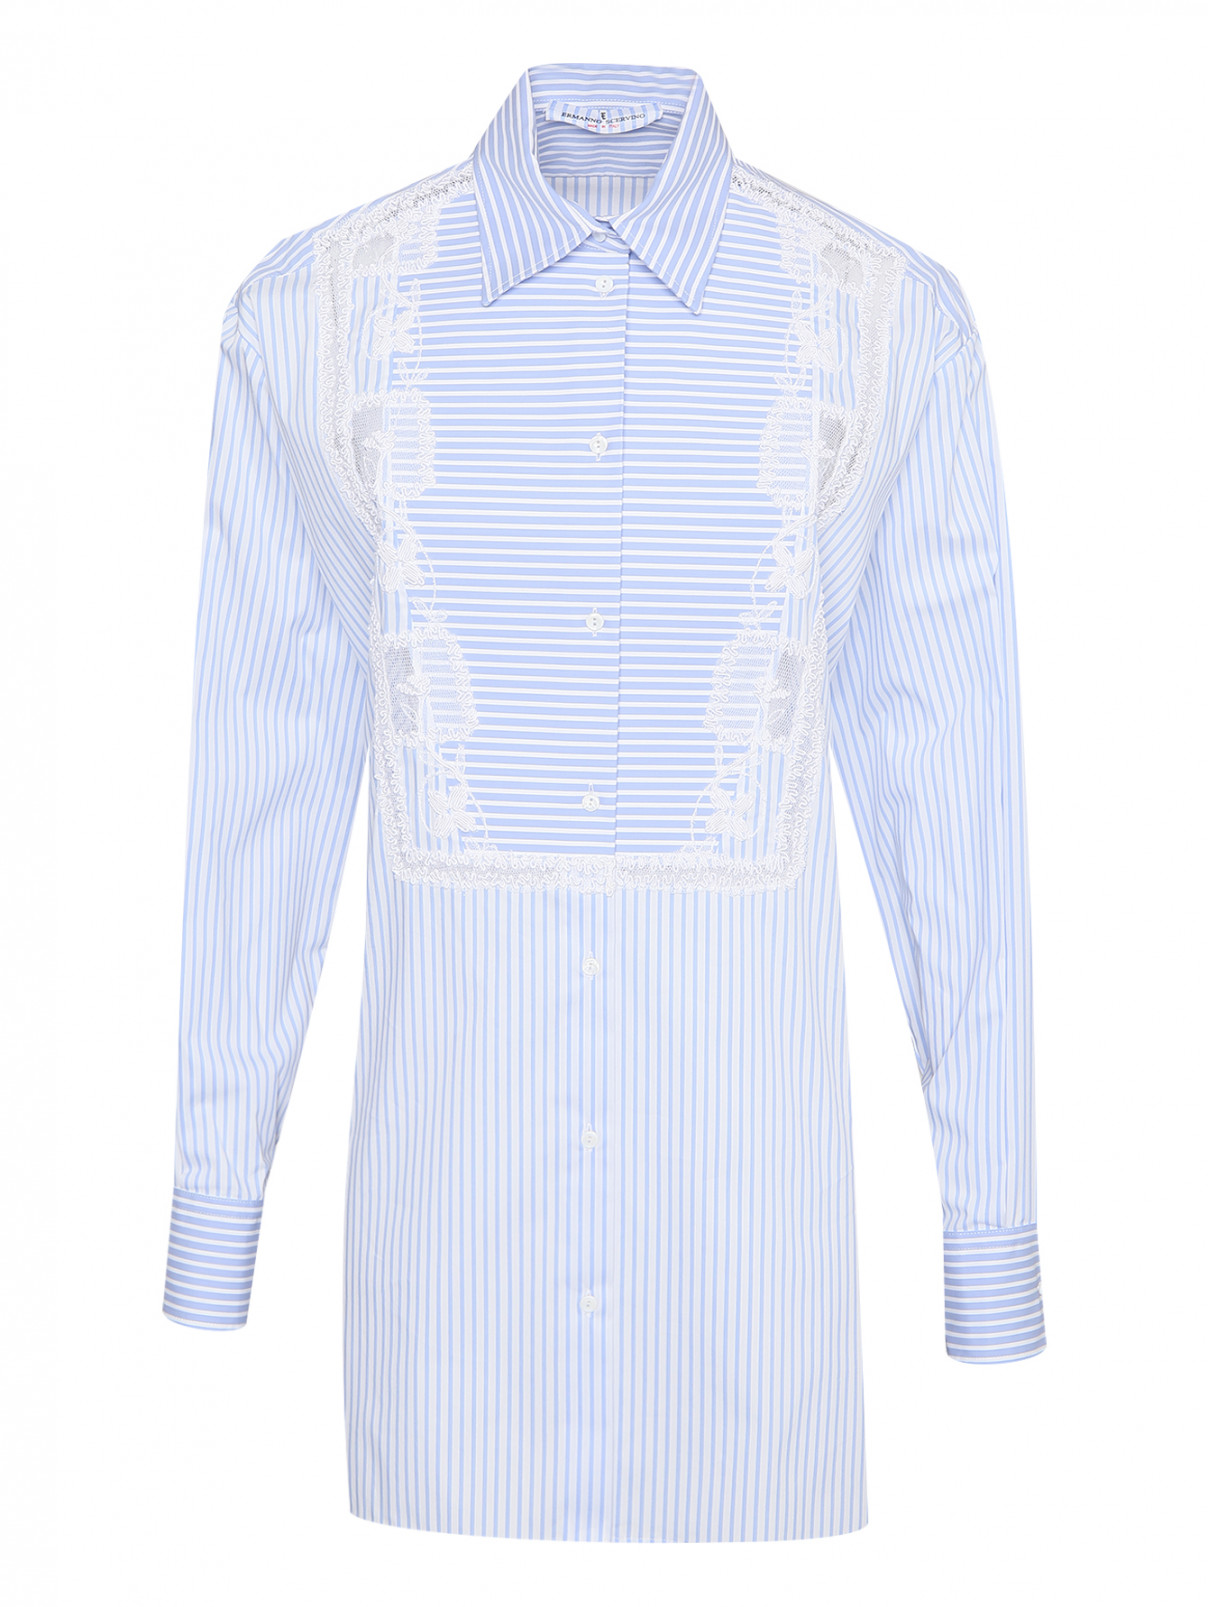 Удлиненная рубашка с узором и вышивкой Ermanno Scervino  –  Общий вид  – Цвет:  Синий